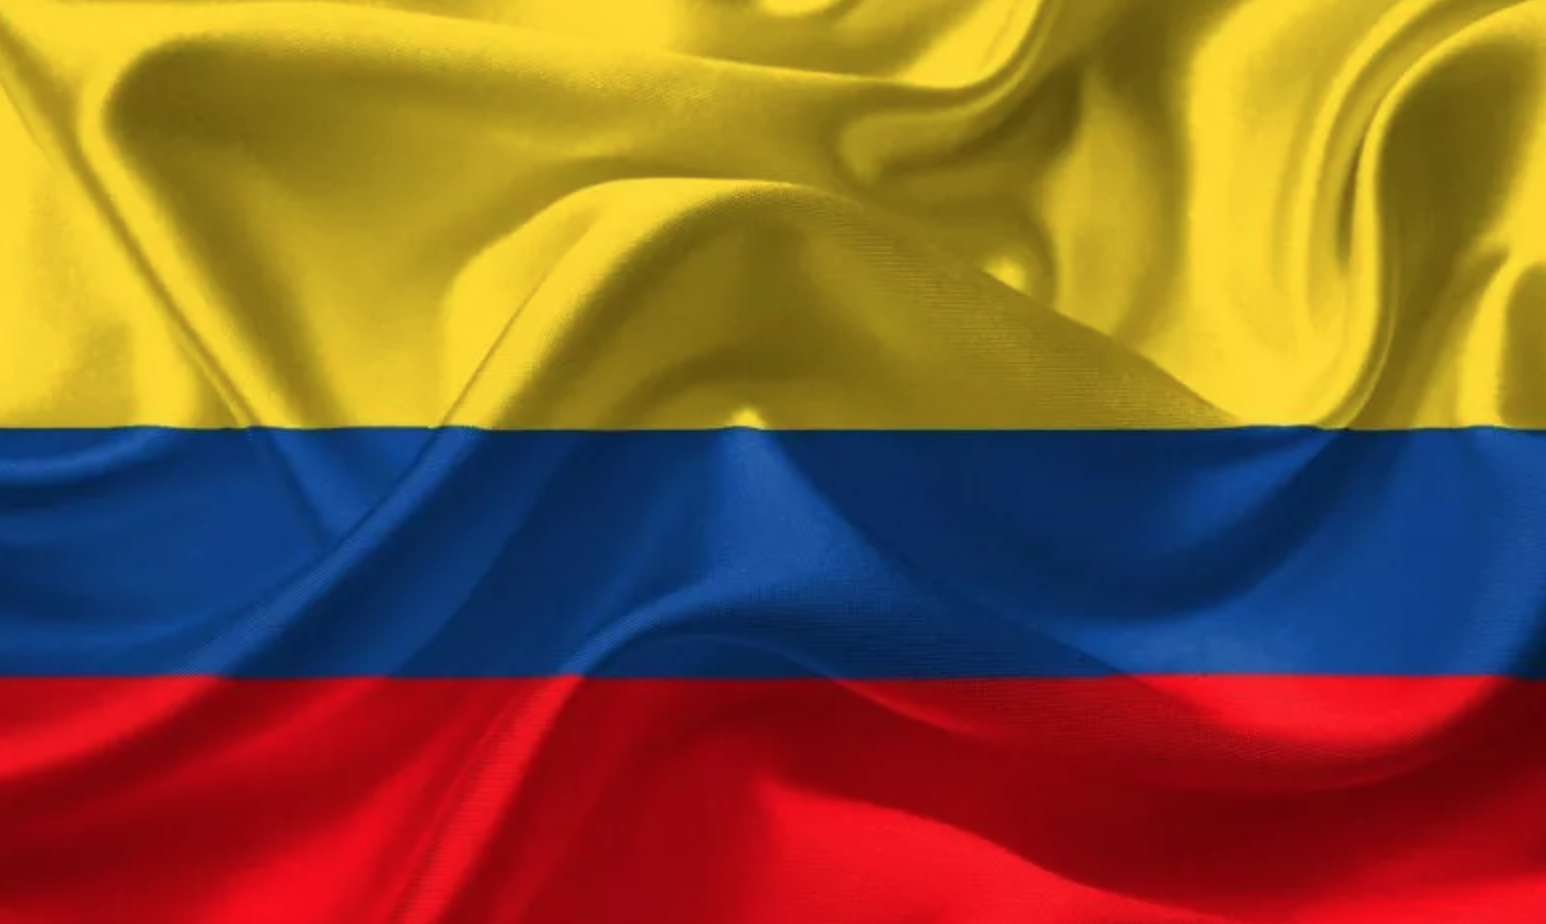 FLASH - Colombia: Corte costituzionale dice no a liberalizzazione aborto 1